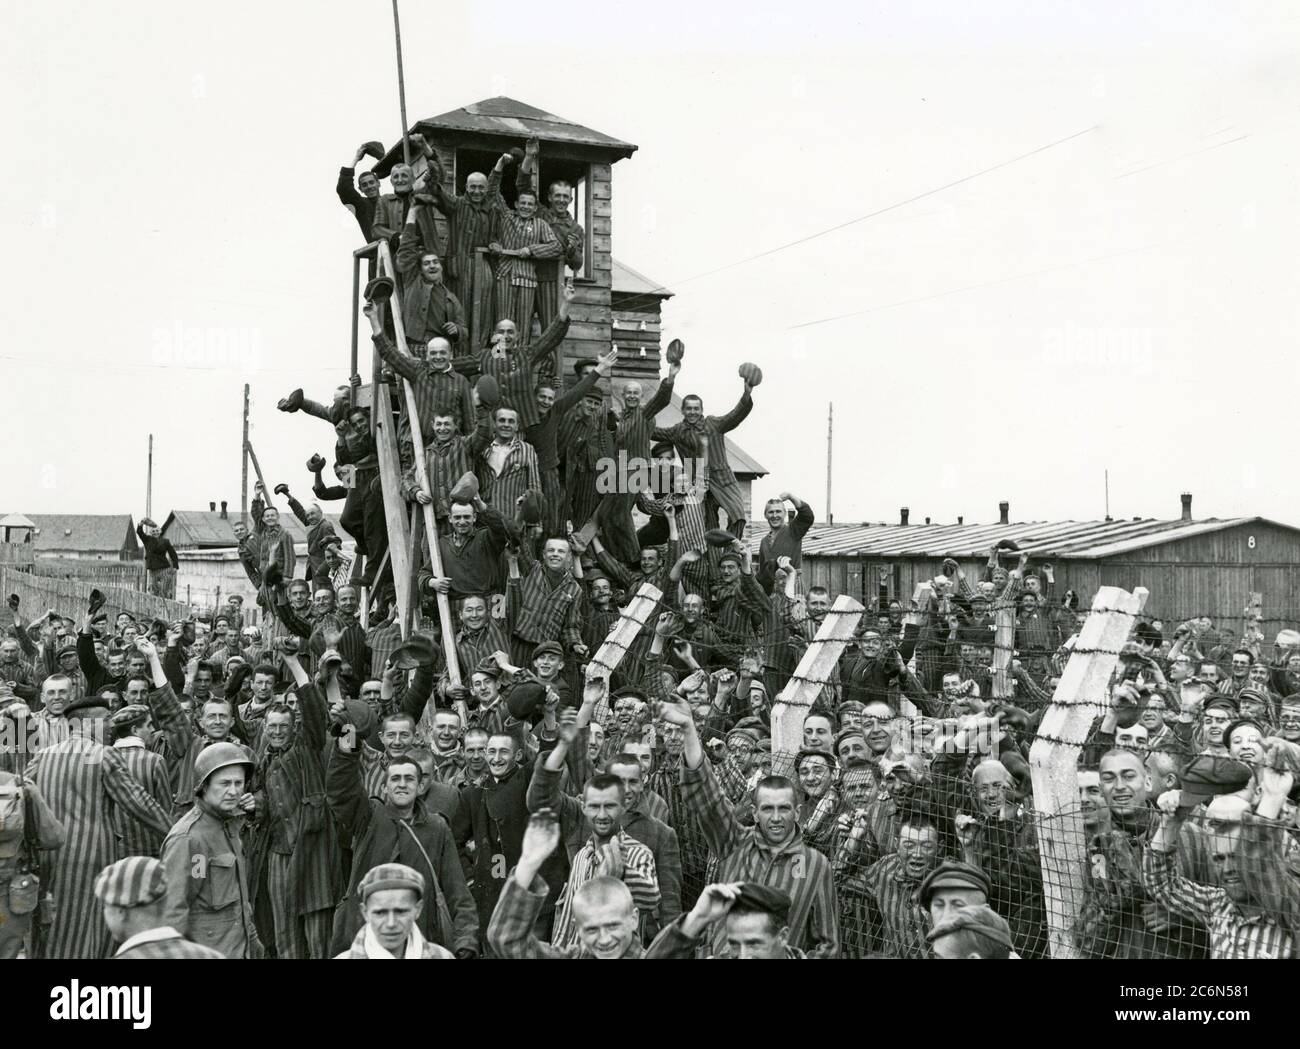 Les prisonniers nouvellement libérés du camp de concentration d'Allach célèbrent leur libération près de Dachau, en Allemagne, le 30 avril 1945. Des soldats américains de la 7e Armée des États-Unis, y compris des membres de la 42e infanterie et de la 45e infanterie et de la 20e division des soldats de l'armée, ont participé à la libération de l'subcamp. Le principal camp de concentration de Dachau comptait plus de 120 sous-camps dans la région Banque D'Images